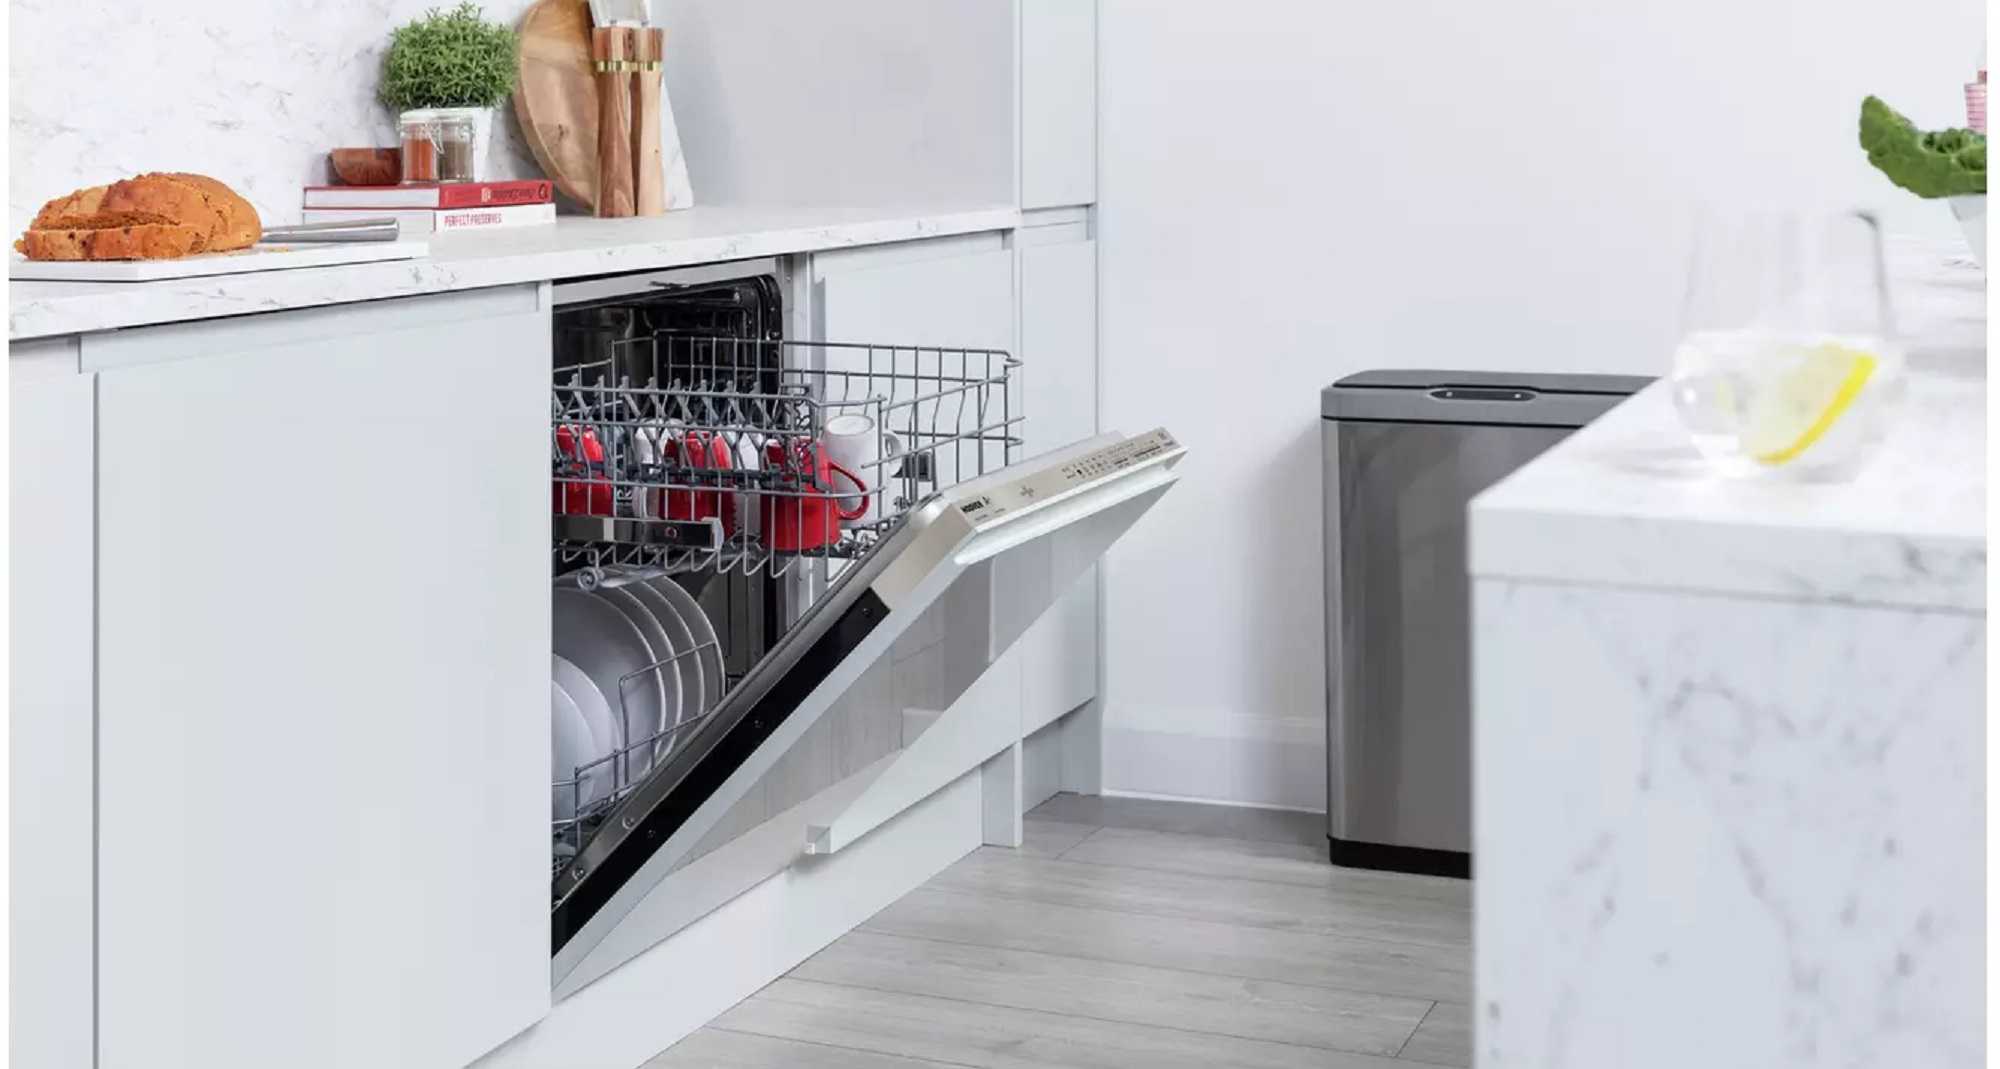 Посудомоечная машина рейтинг цена качество 60. Топ посудомоечных машин 2022. Встраиваемая посудомоечная машина Miele g7250 SCVI. Лучшие посудомоечные машины 2022. Miele g 5072.